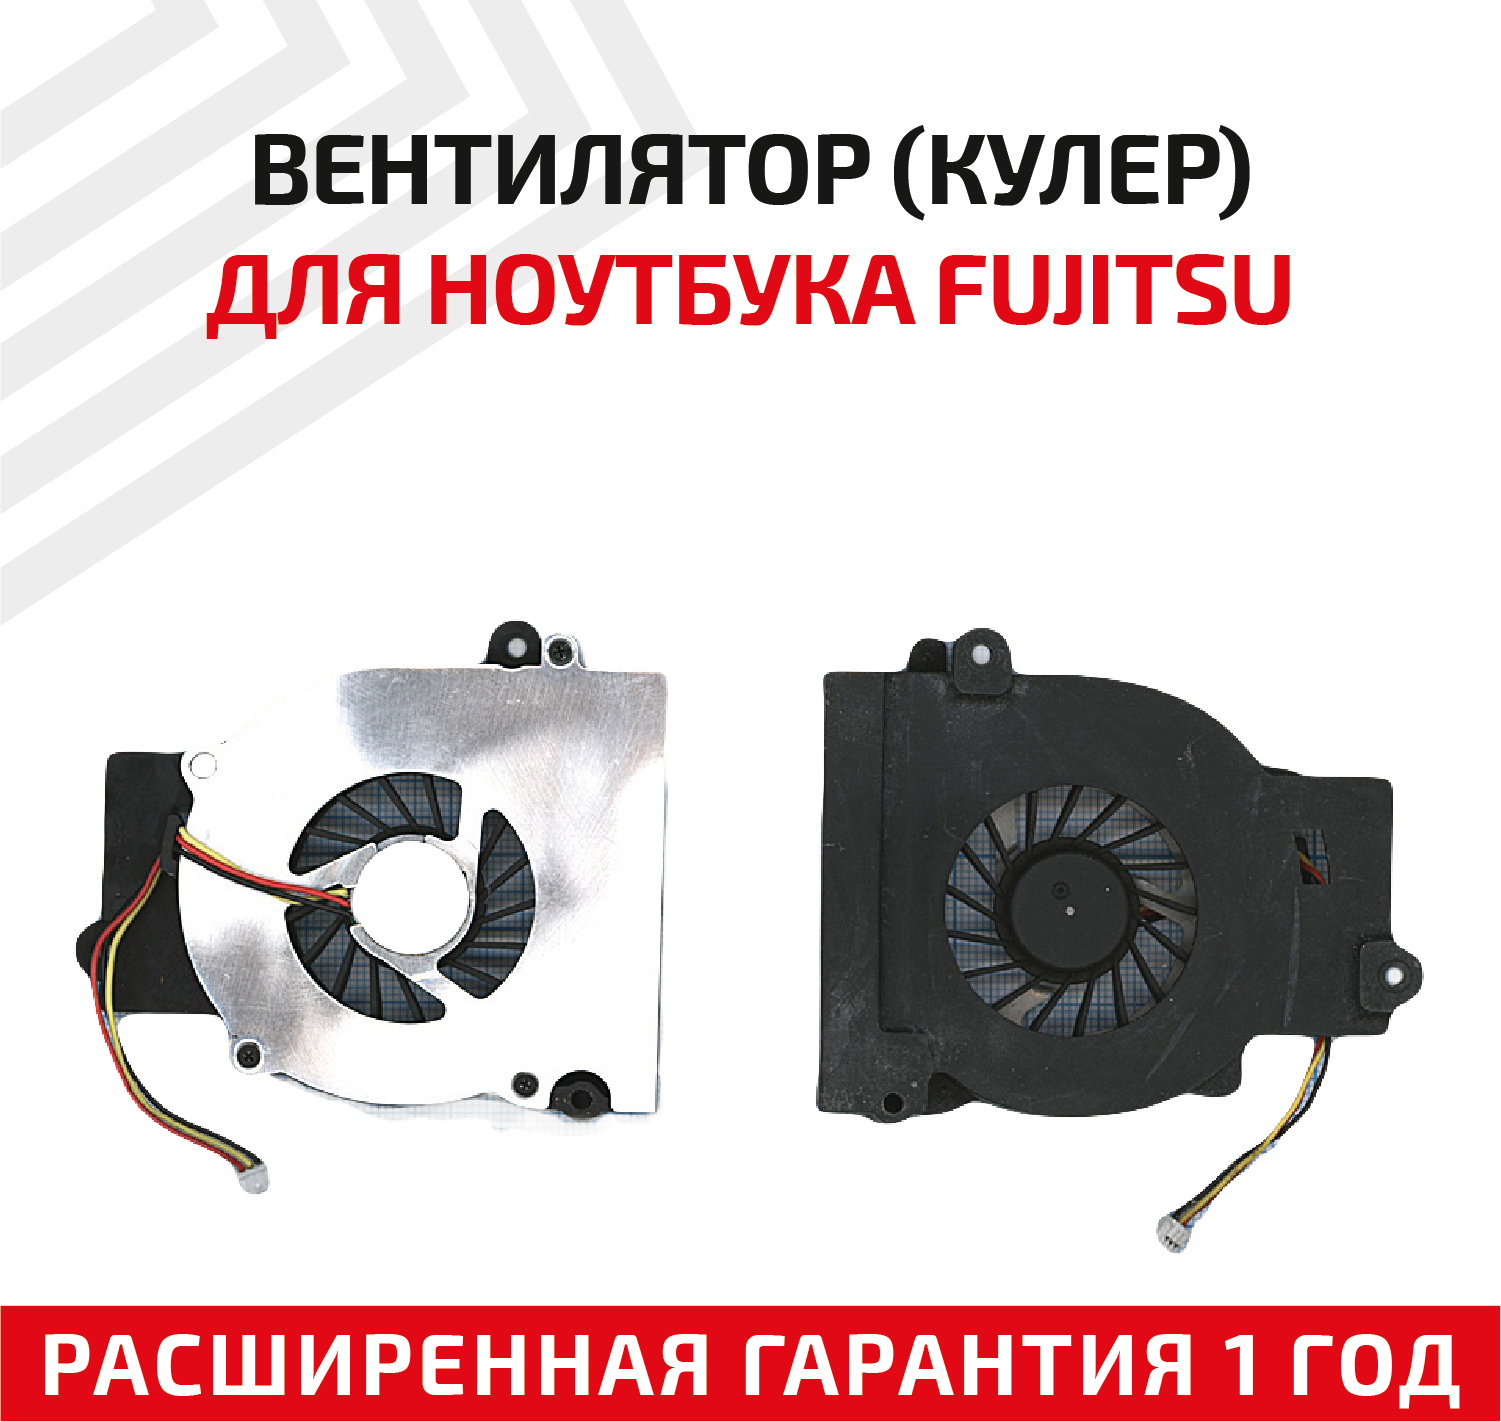 Вентилятор (кулер) для ноутбука Fujitsu Amilo L1300, L1310G, L7320